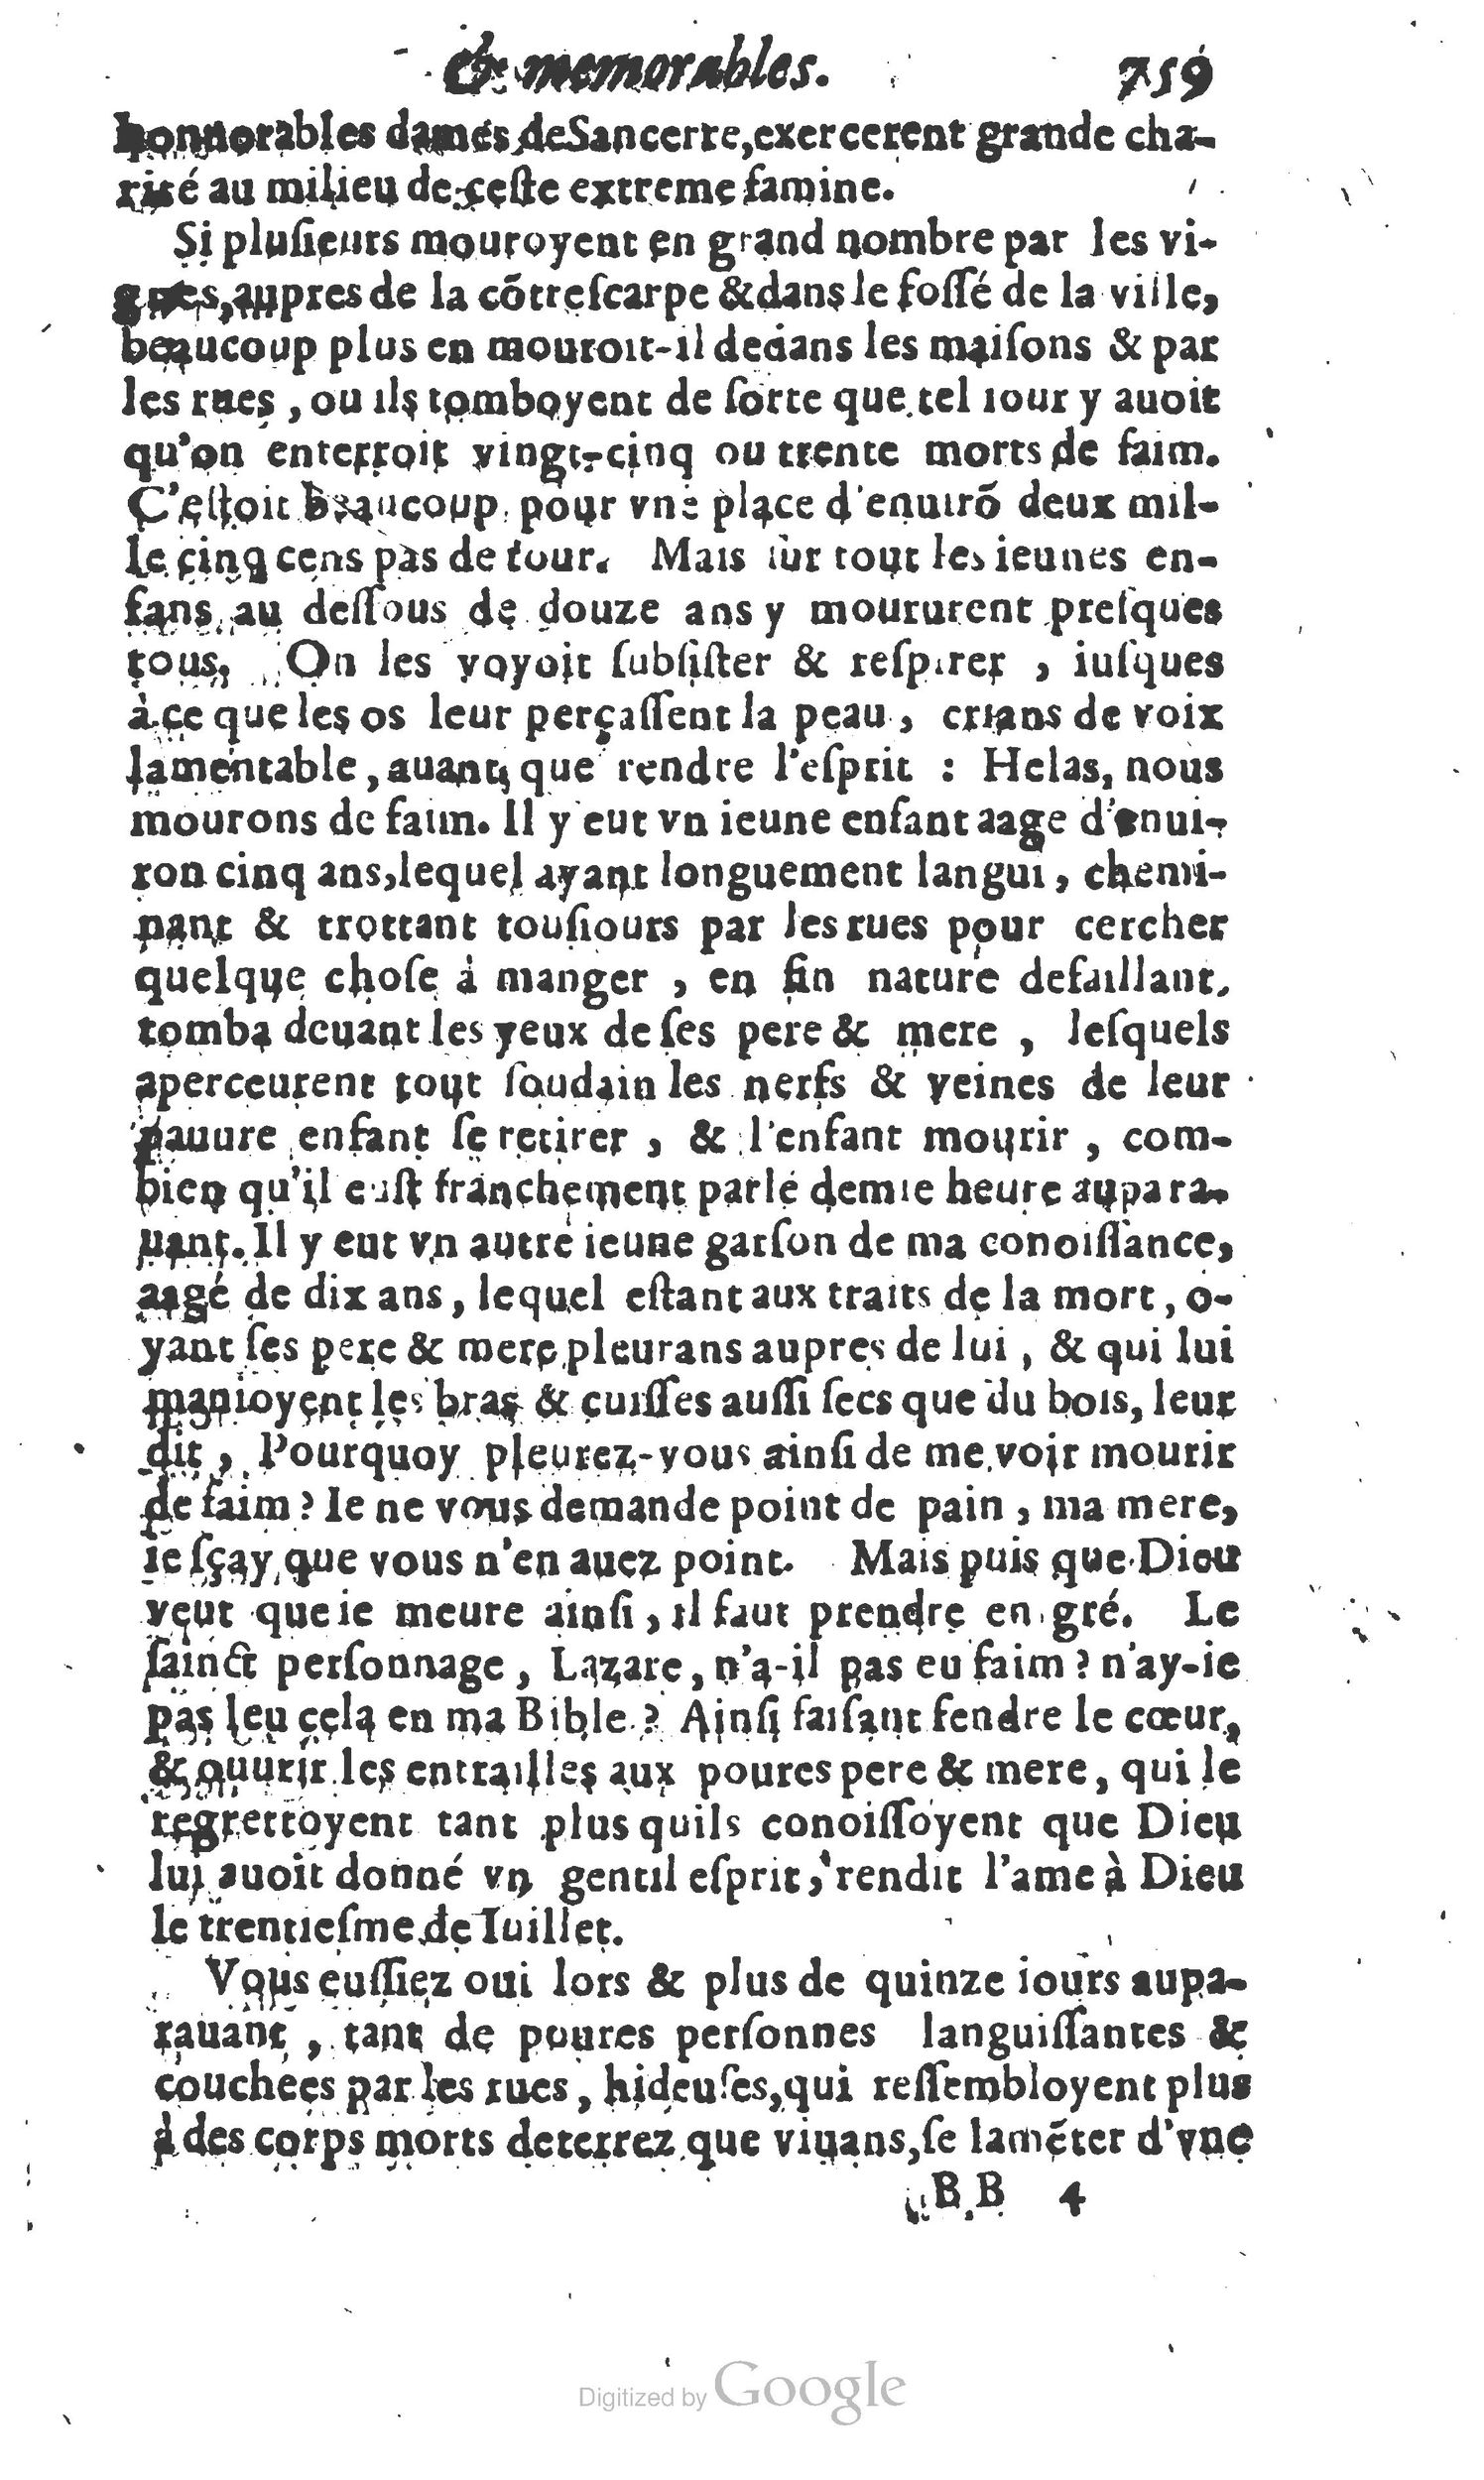 1610 Trésor d’histoires admirables et mémorables de nostre temps Marceau Princeton_Page_0780.jpg